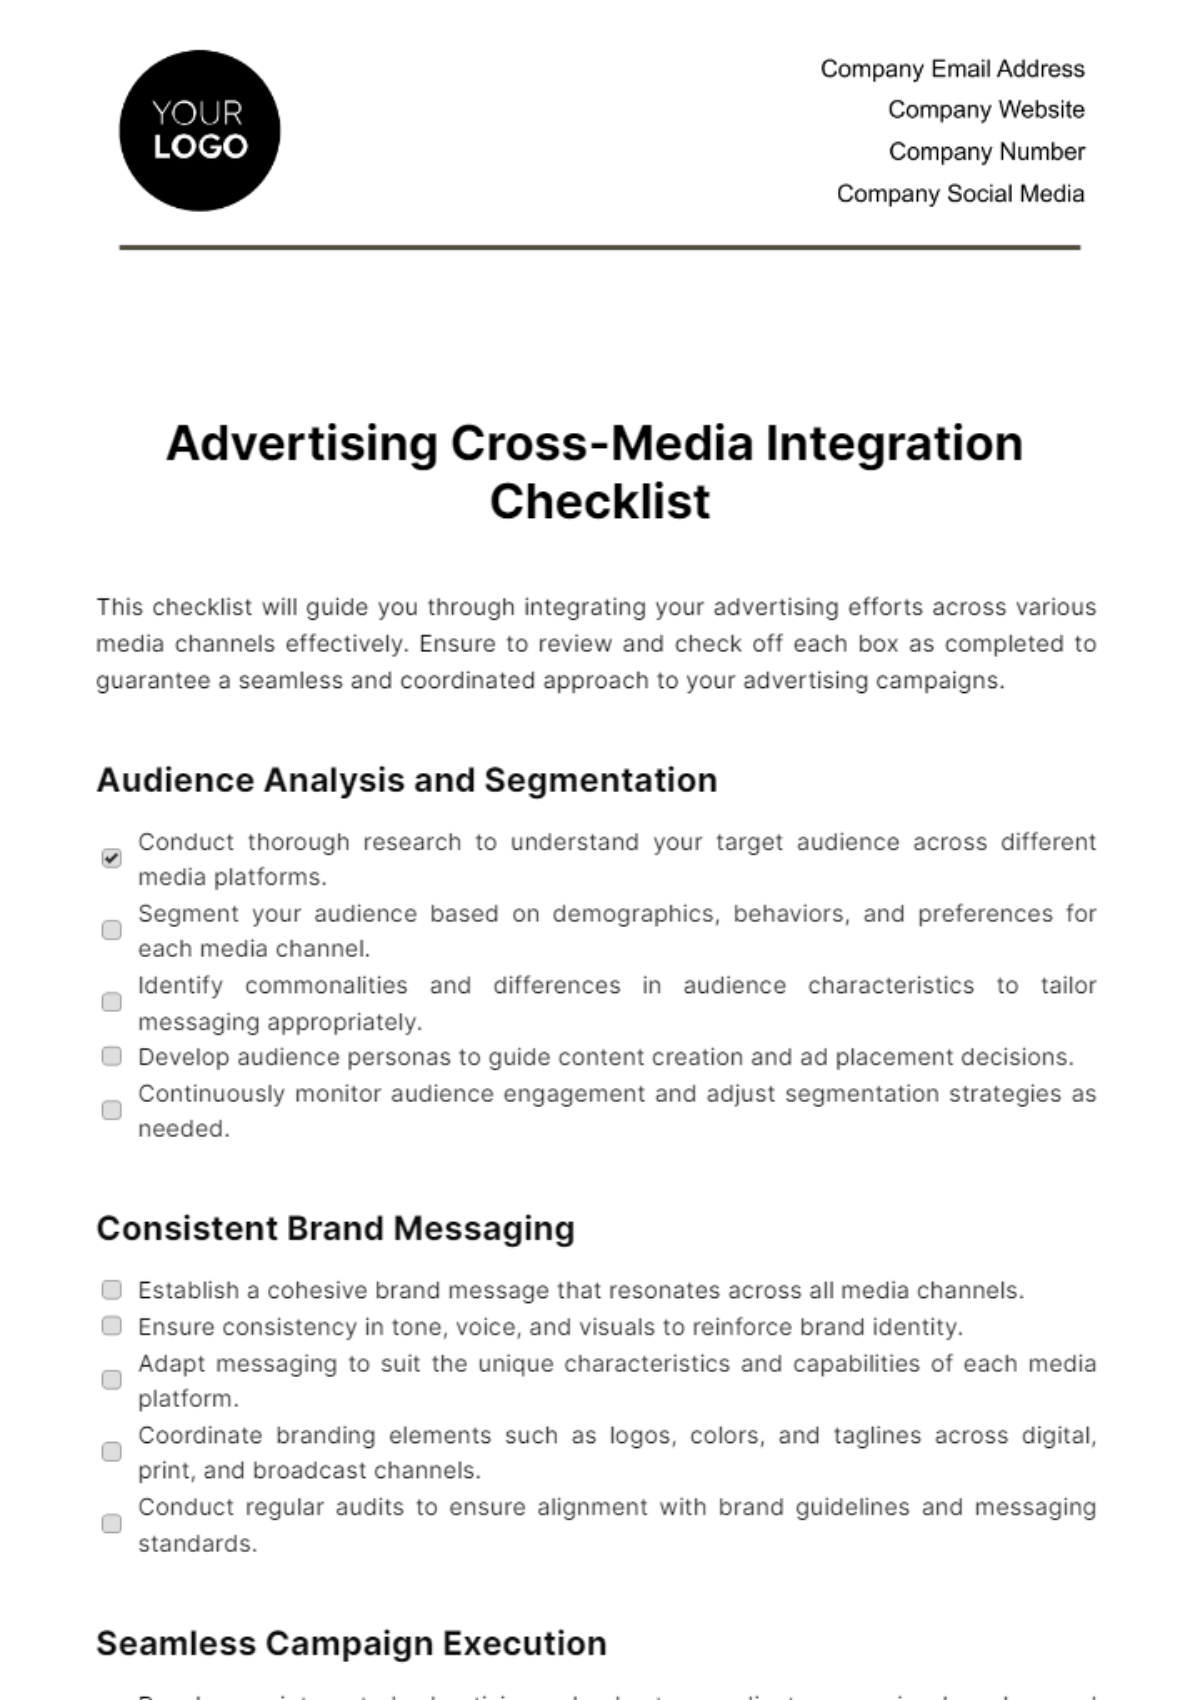 Free Advertising Cross-Media Integration Checklist Template